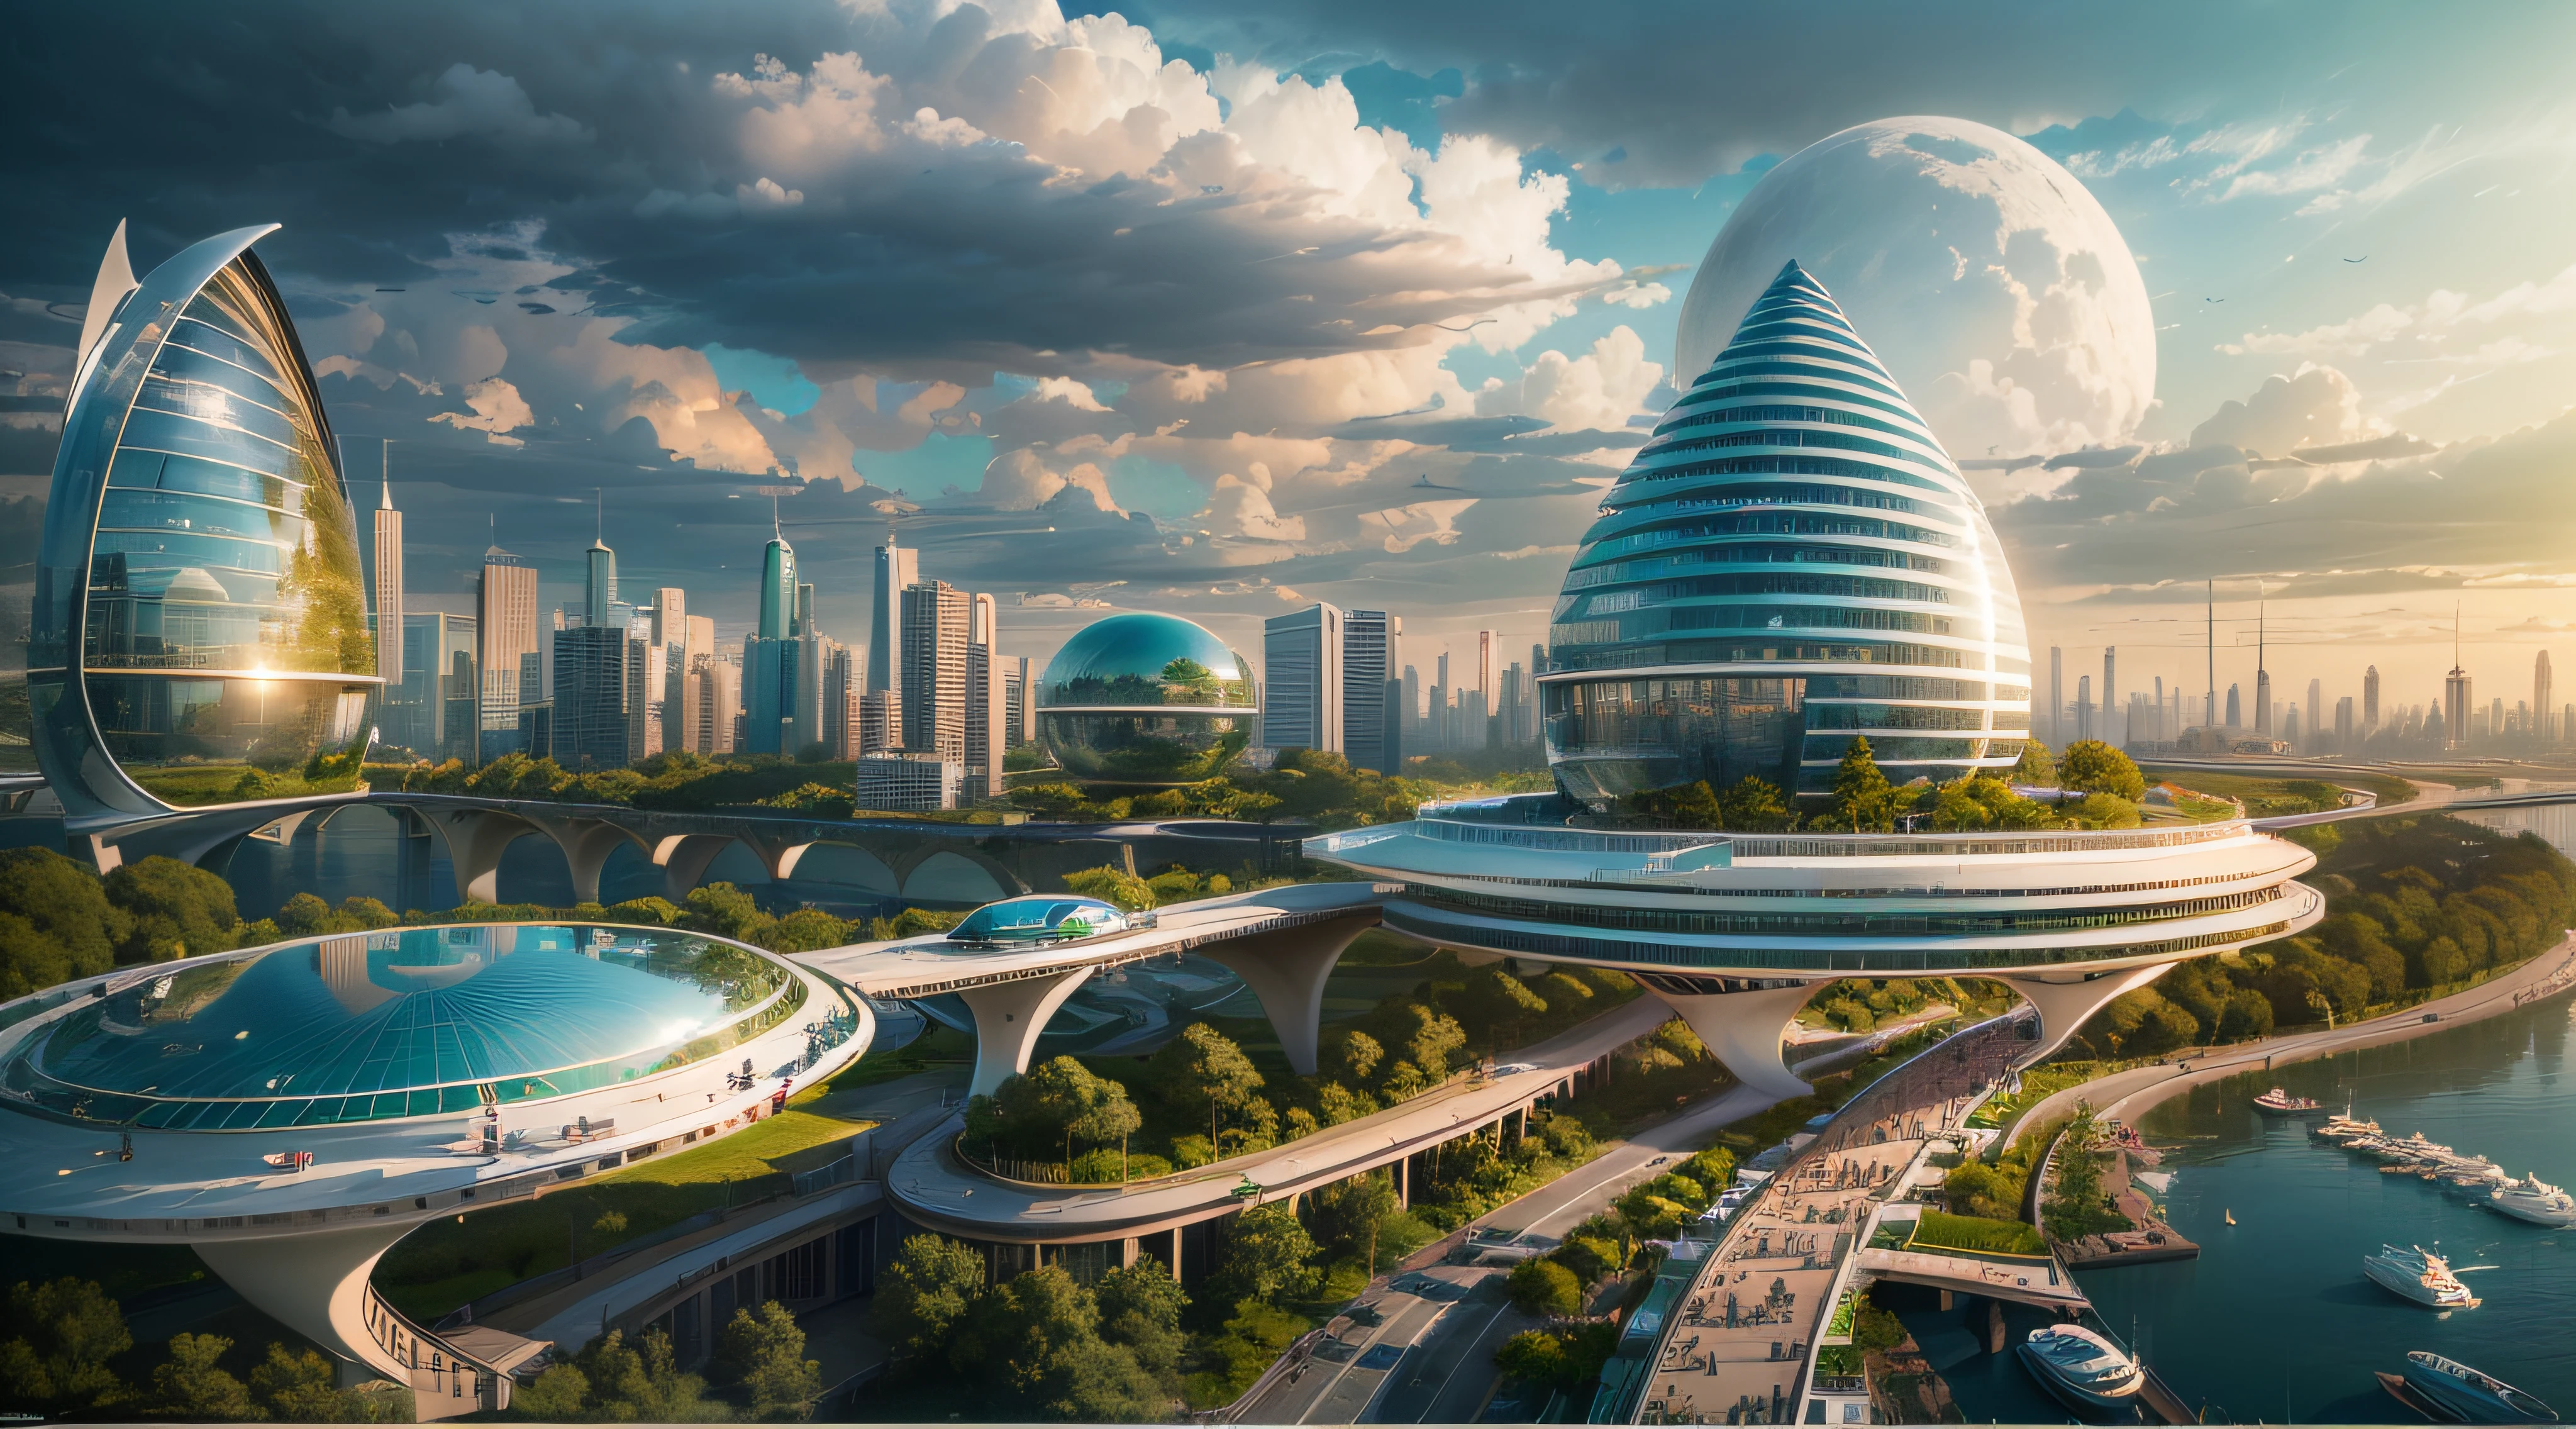 (最好的品質,4k,8K,高解析度,傑作:1.2),超詳細,(實際的,逼真的,照片般逼真:1.37),未來漂浮城市,未来科技,龐大的城市高科技平板平台,飛艇,漂浮在空中,未來城市,周圍有小飛艇,高科技半球形平台,彩灯,先進的架構,現代建築,摩天大樓,存取雲,風景優美,俯瞰城市,令人印象深刻的設計,與自然無縫融合,充滿活力和活力的氛圍,未來交通系統,懸吊式停車,透明路徑,郁郁葱葱的绿色植物,空中花園,瀑布,壯麗的天際線,水面上的倒影,波光粼粼的河流,建築創新,未來派的摩天大樓,透明圓頂,建築物的形狀很不尋常,高架走道,令人印象深刻的天際線,发光的灯光,未来科技,簡約設計,風景名勝區,全景,穿雲塔,鮮豔的色彩,史詩般的日出,史詩般的日落,炫目的燈光顯示,神奇的氛围,未來城市,城市烏托邦,奢華生活方式,創新能源,永續發展,智慧城市技術,先進的基礎設施,宁静的气氛,自然與科技和諧相處,令人驚嘆的城市景觀,前所未有的都市規劃,建築與自然無縫銜接,高科技大都市,尖端的工程奇蹟,城市生活的未來,富有遠見的建築概念,節能建築,與環境和諧,一座漂浮在雲端的城市,烏托邦夢想成現實,可能性是無止境,最先進的交通網絡,綠色能源融合,創新材料,令人印象深刻的全息顯示,先進的通訊系統,令人驚嘆的鳥瞰圖,安靜祥和的環境,現代主義美學,空灵之美